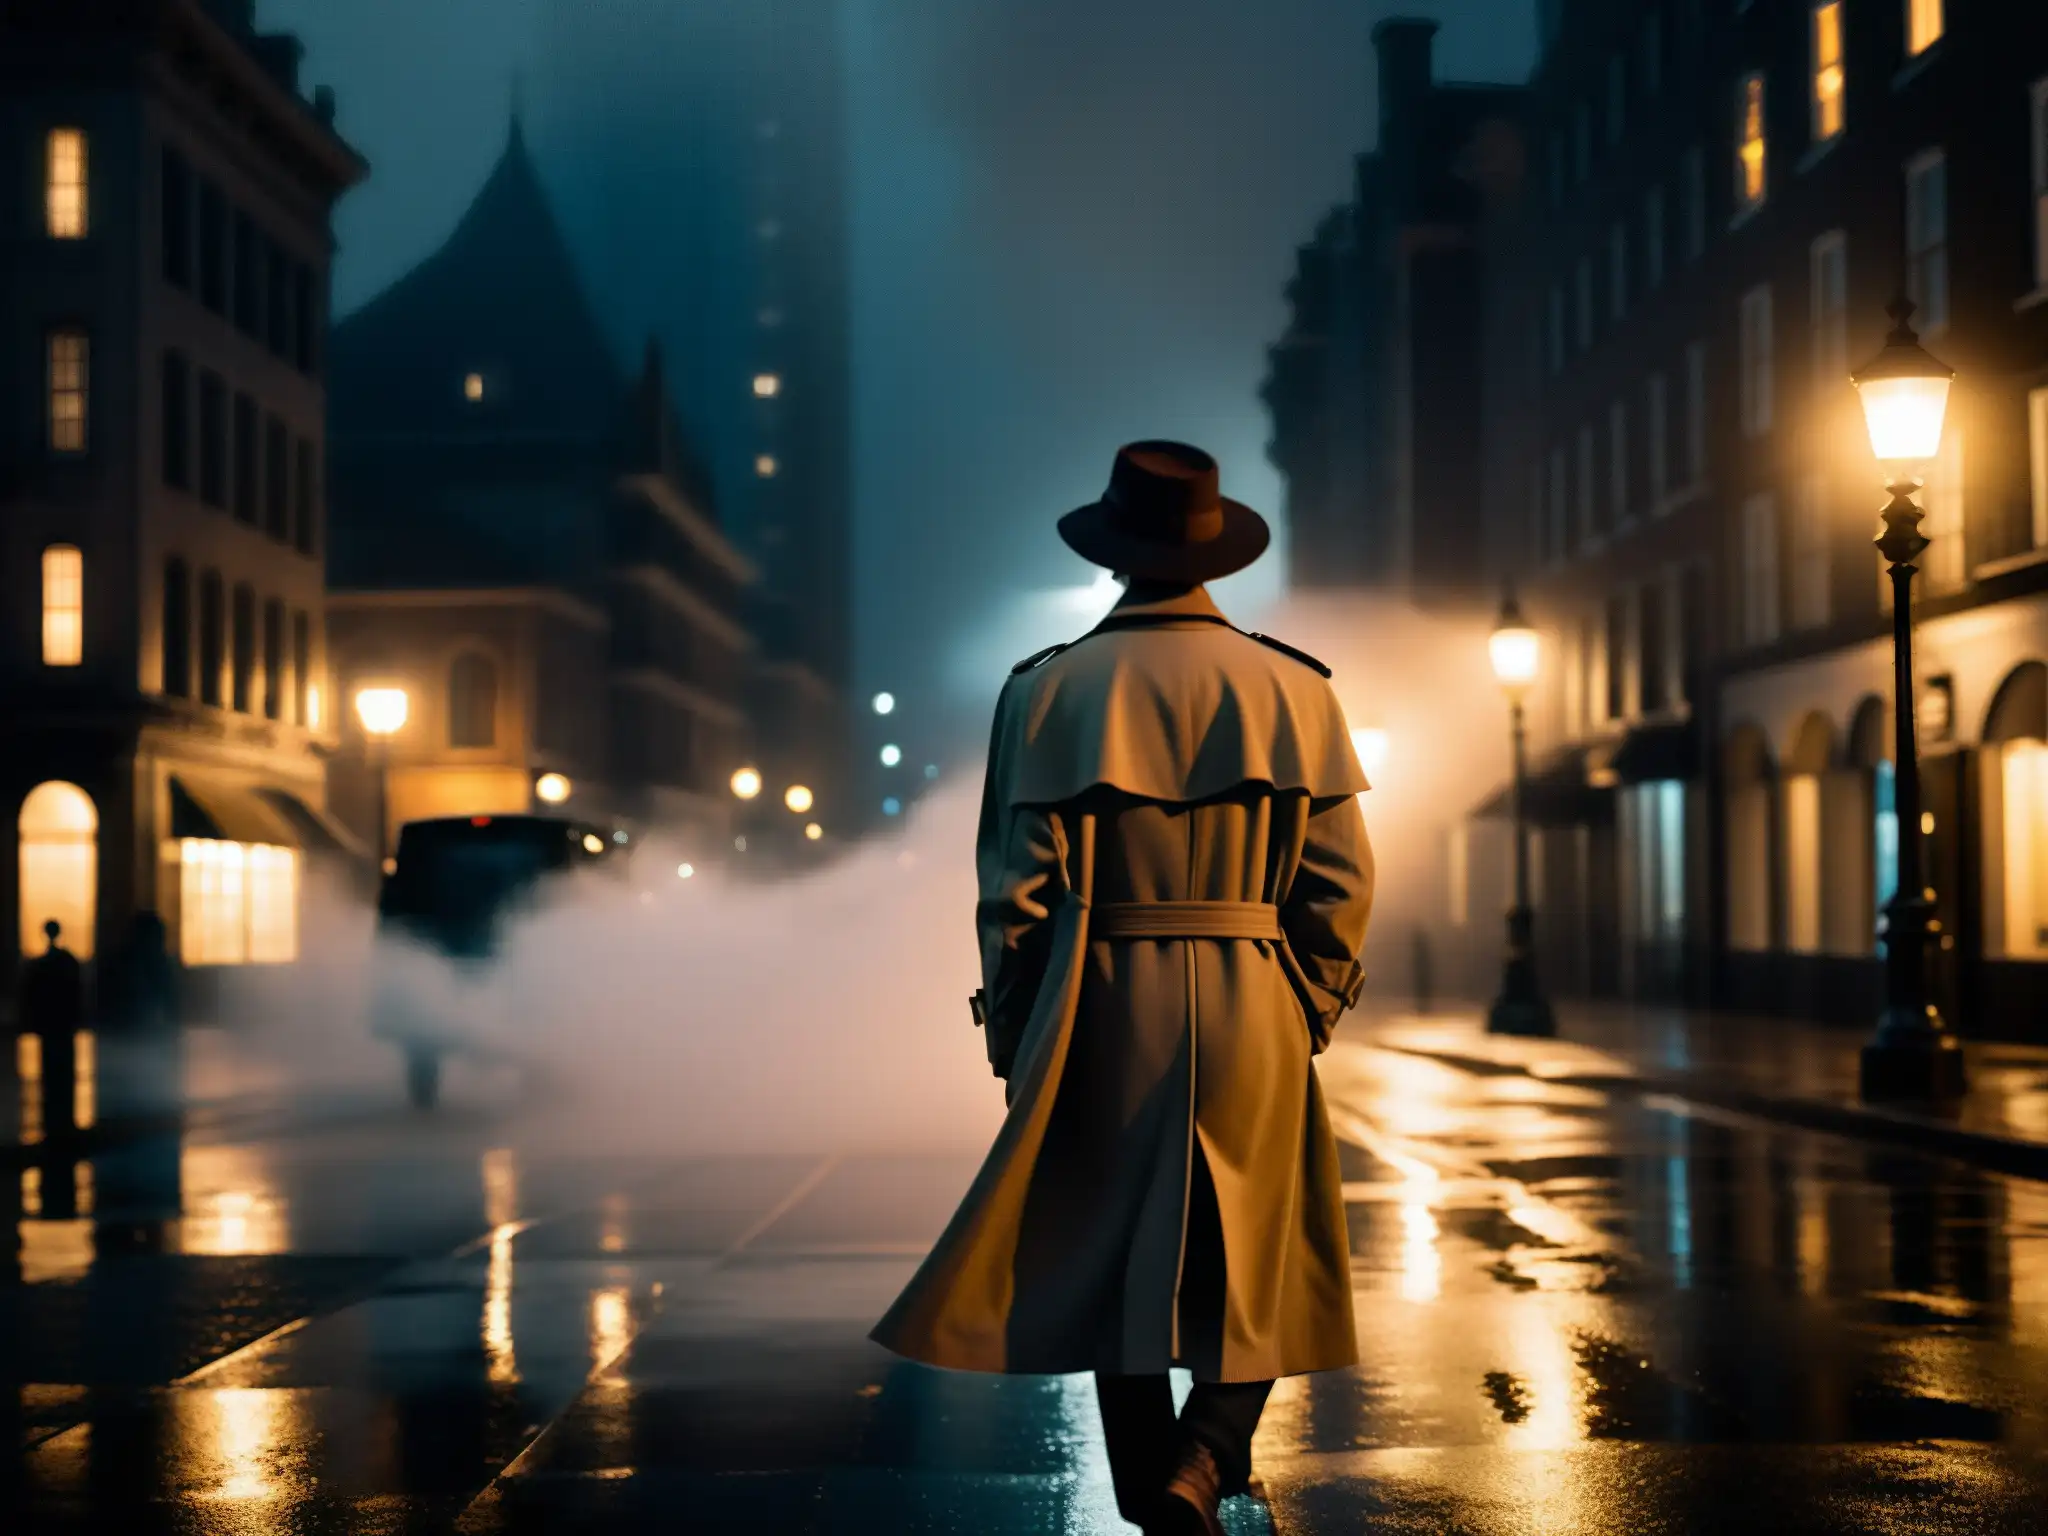 Un misterioso personaje bajo la luz de la calle en la noche, rodeado de neblina y edificios imponentes